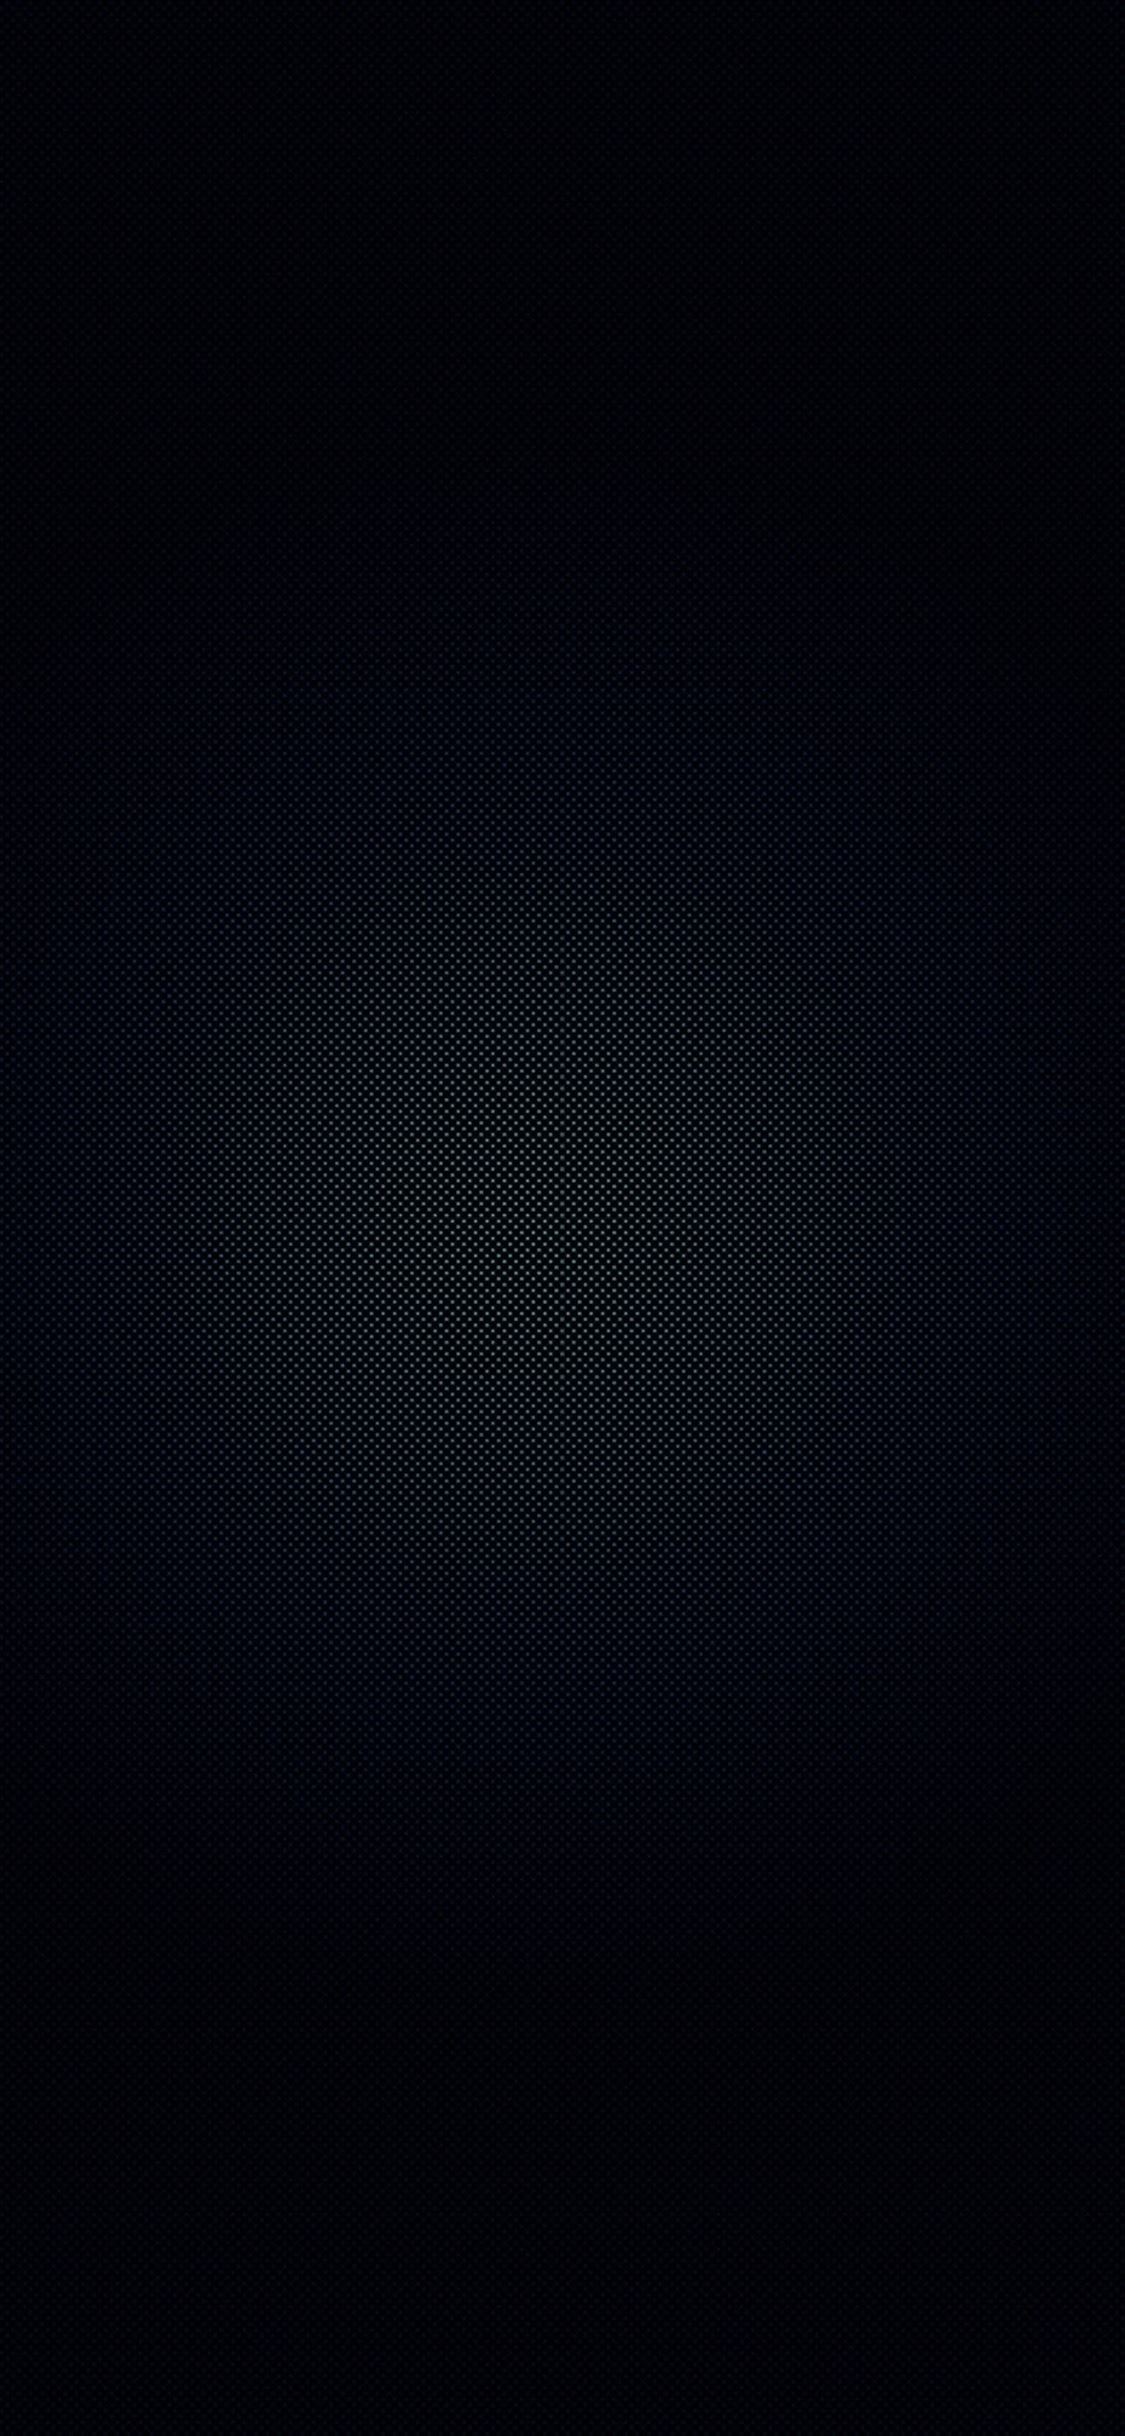 Dark texture iPhone wallpaper 